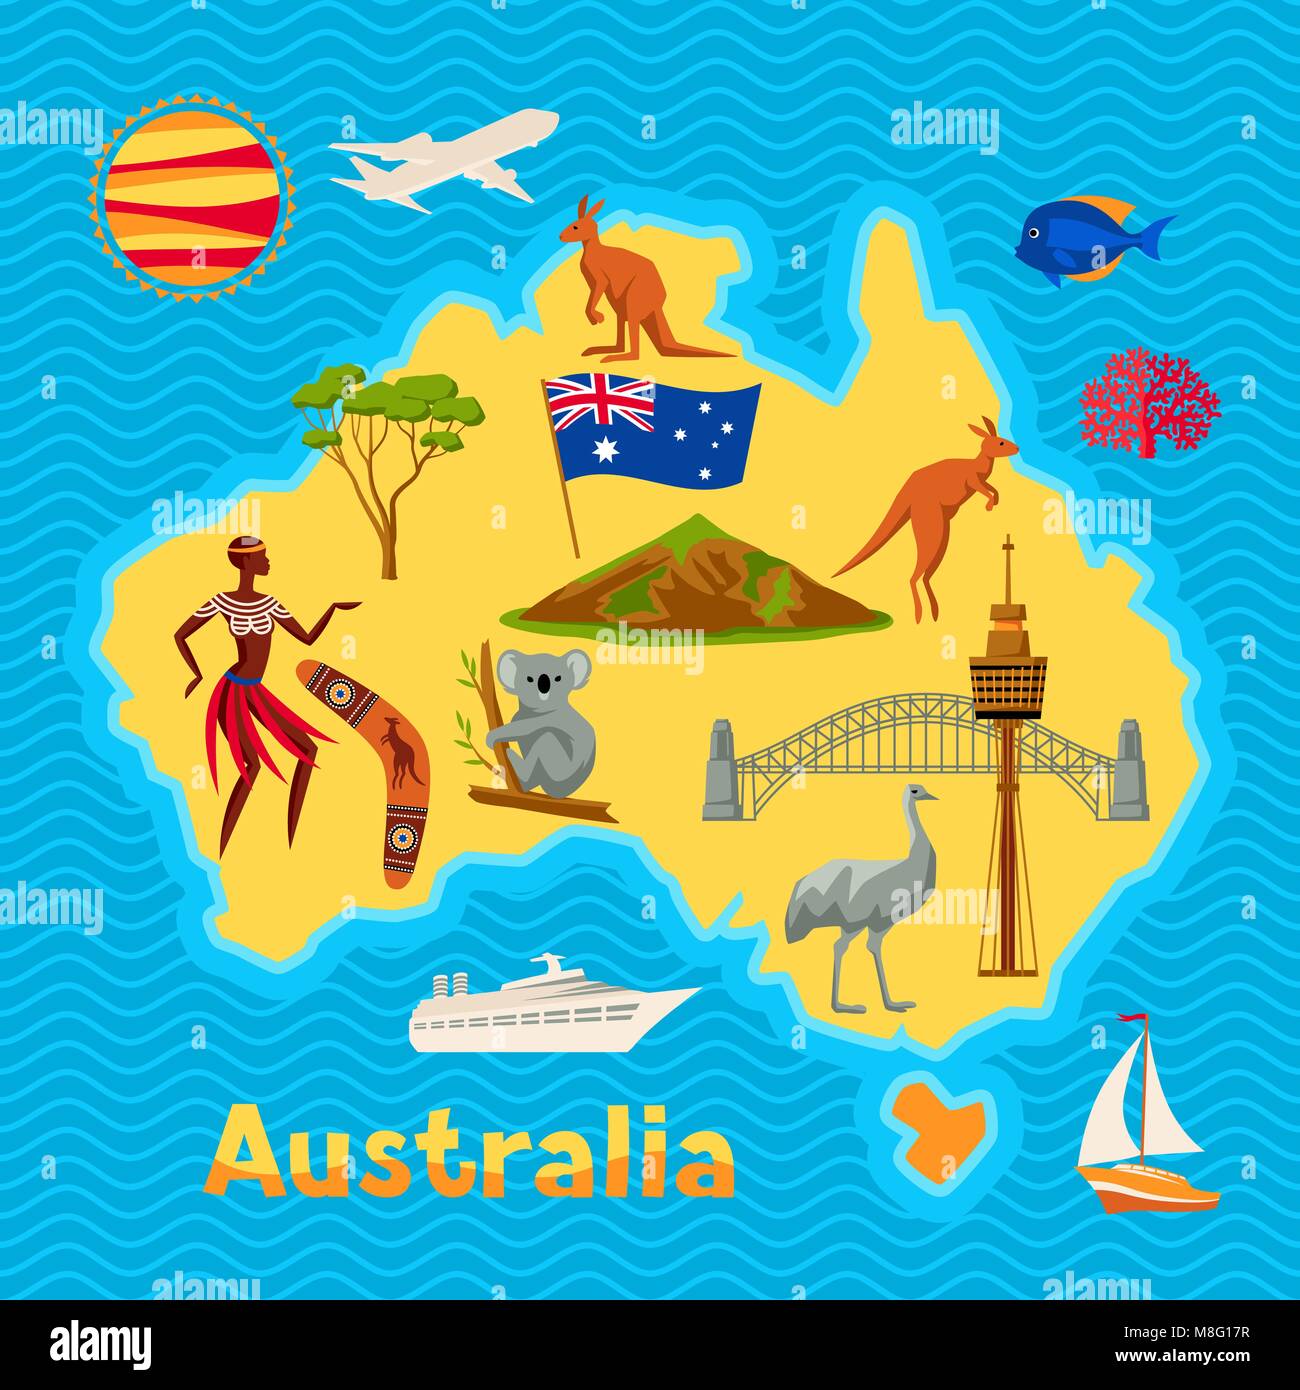 Australien Map Design. Australische traditionelle Symbole und Objekte Stock Vektor